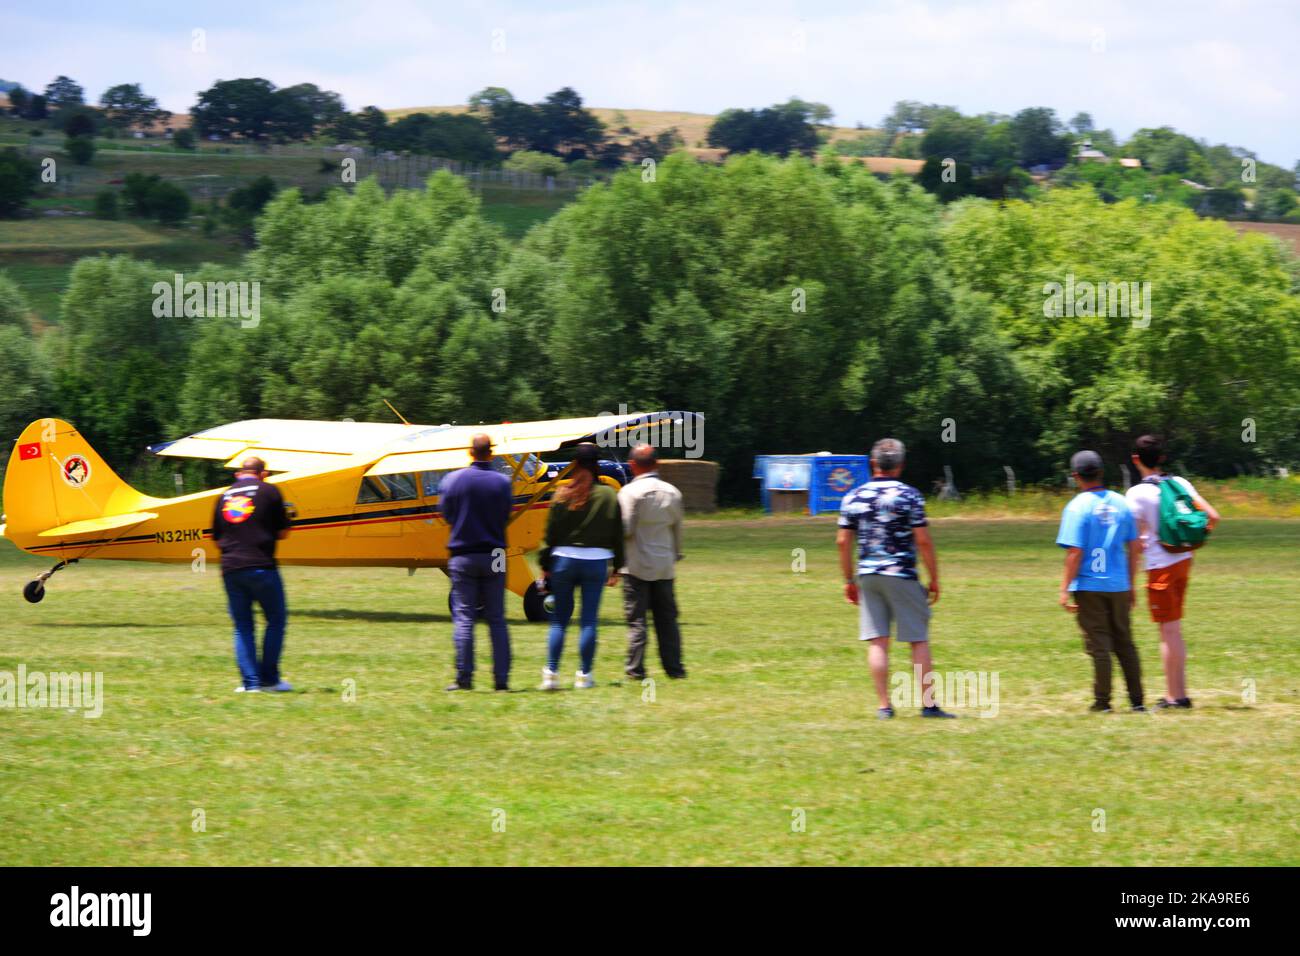 Avion jaune garé sur l'herbe avec des personnes autour de lui sur l'herbe dans une journée ensoleillée à l'extérieur Banque D'Images